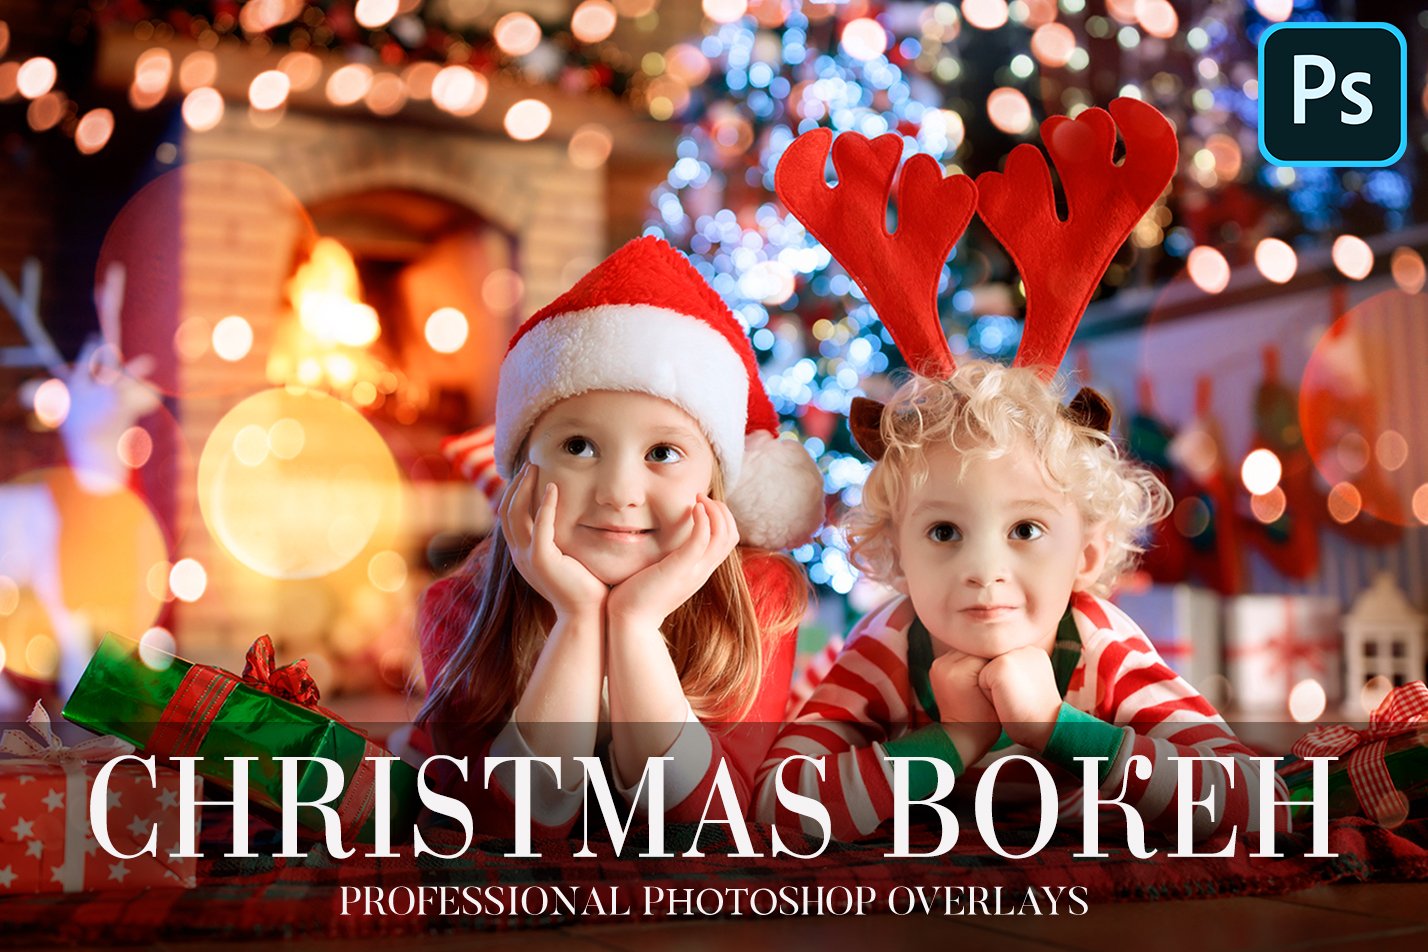 Photoshop Overlays - Christmas Bokehcover image.